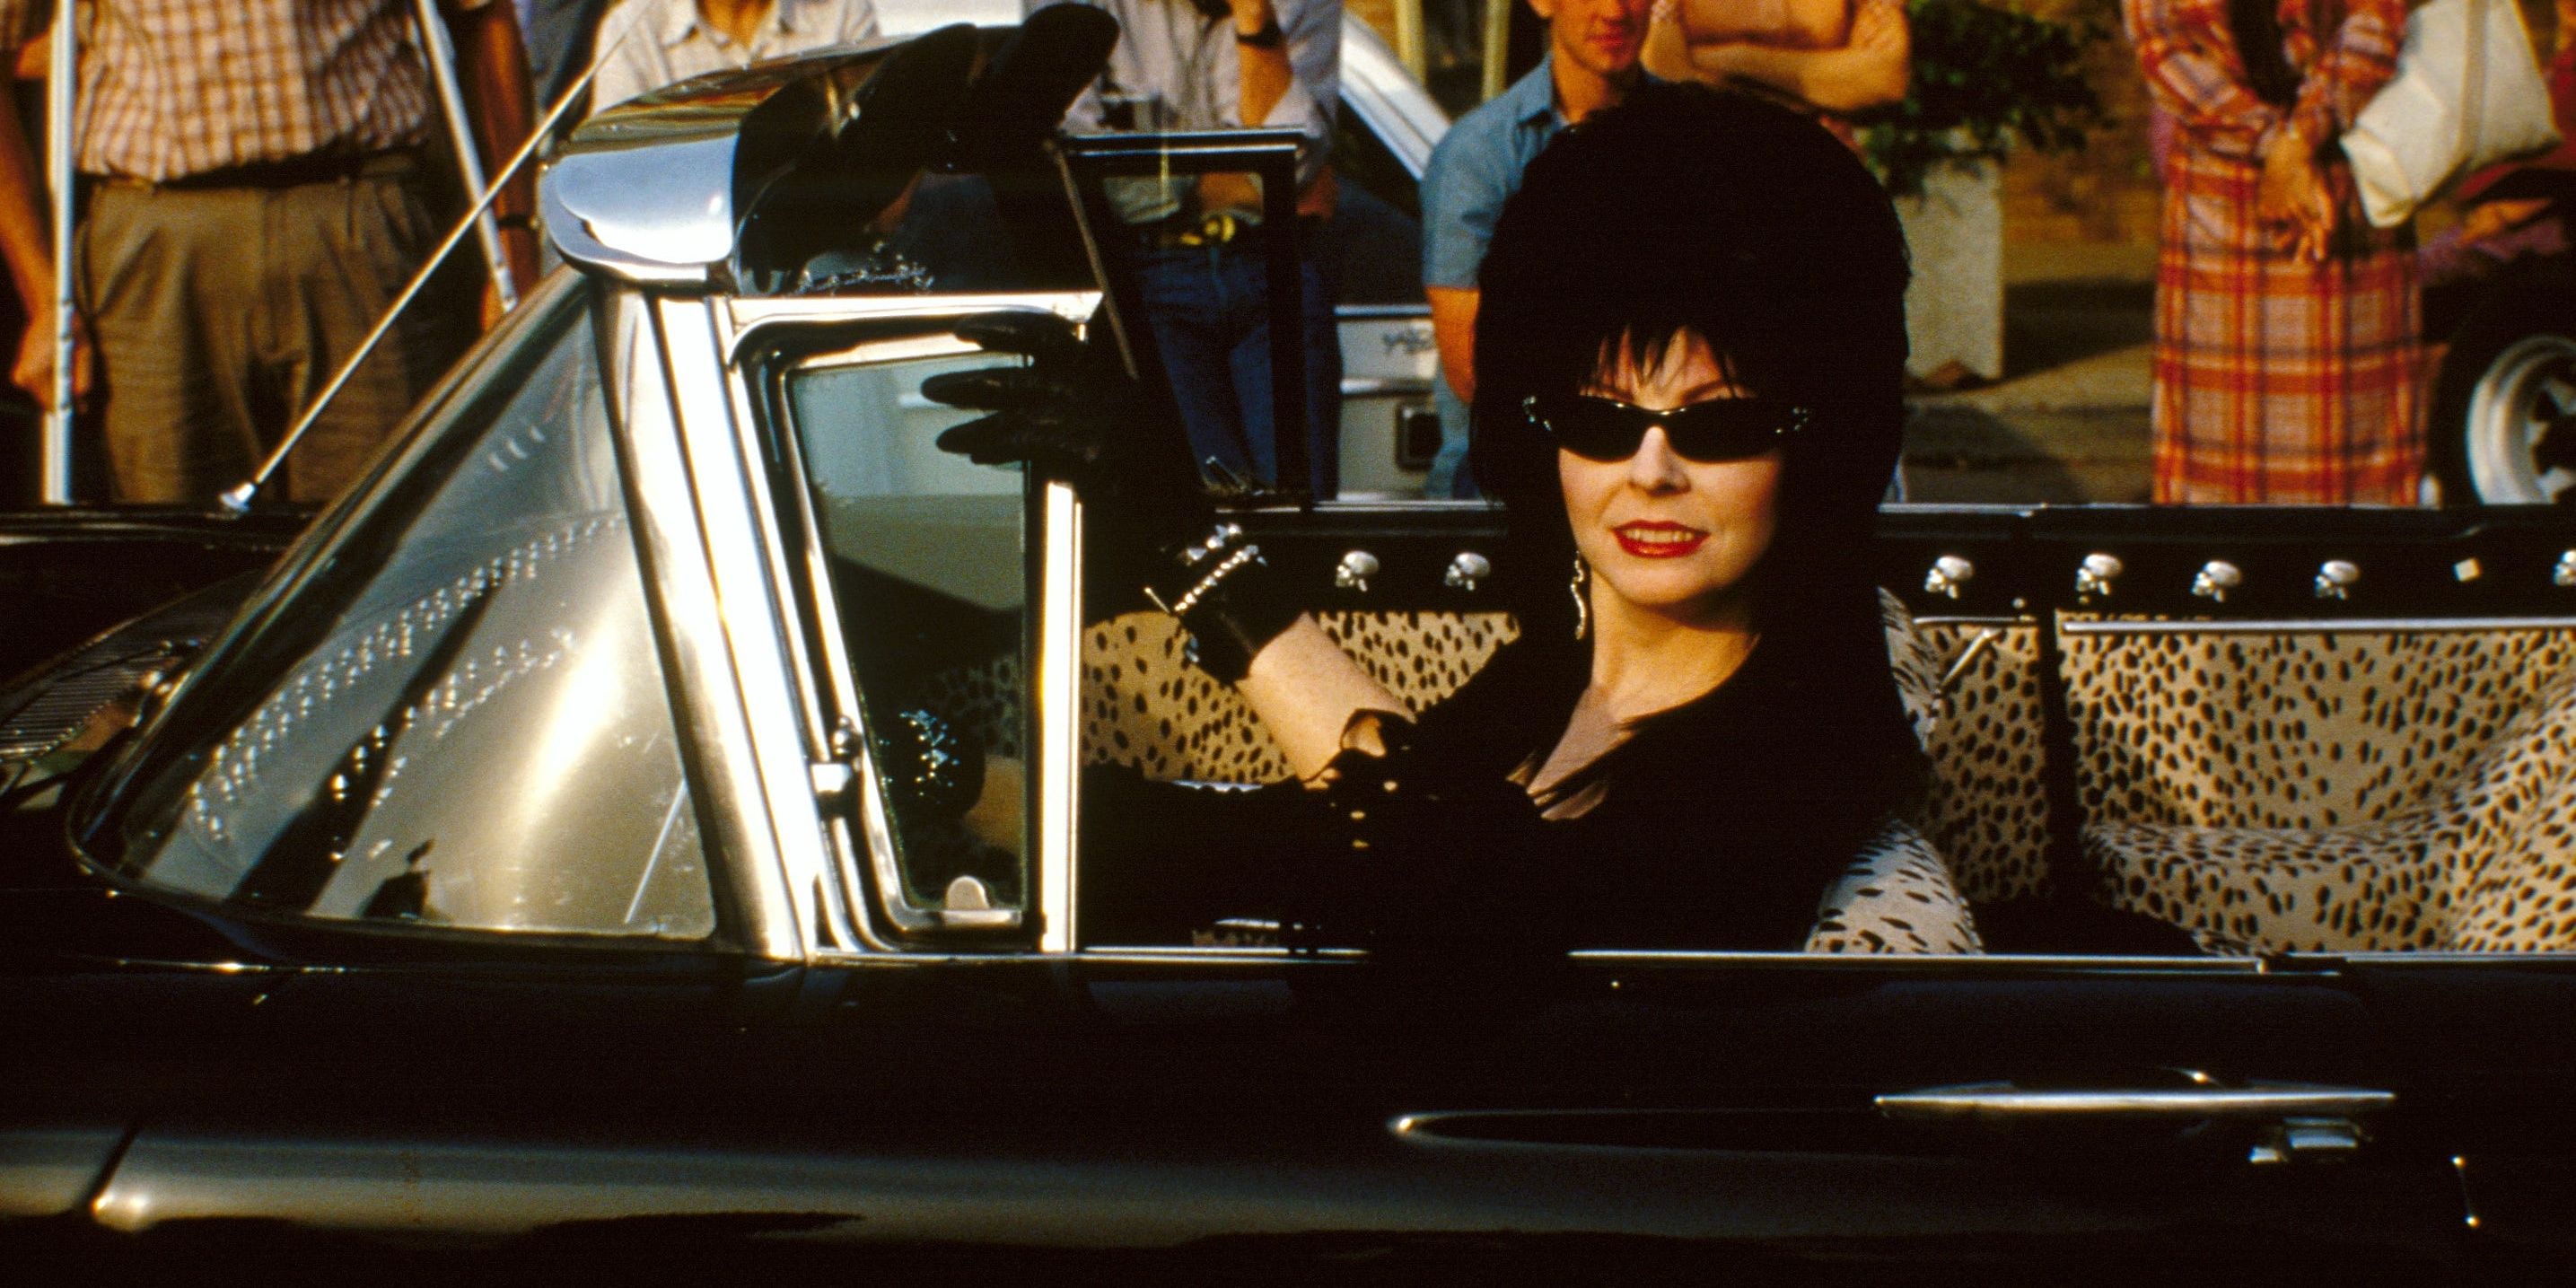 Ποιος είναι η Elvira και γιατί είναι τόσο σημαντική;